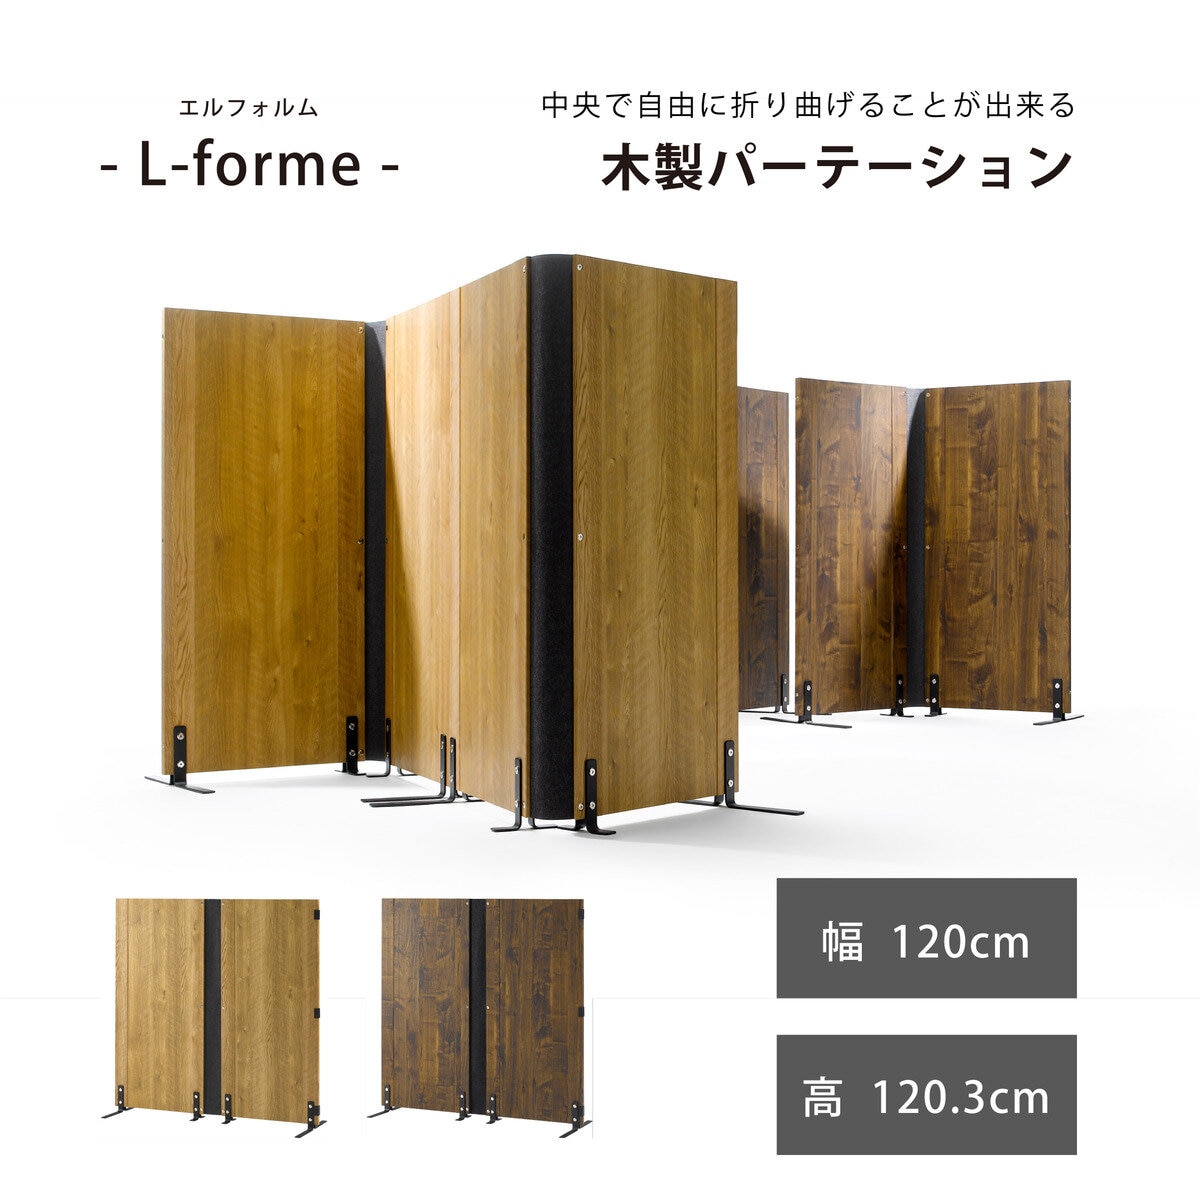 朝日木材加工 L-forme 木製パーティション | Costco Japan